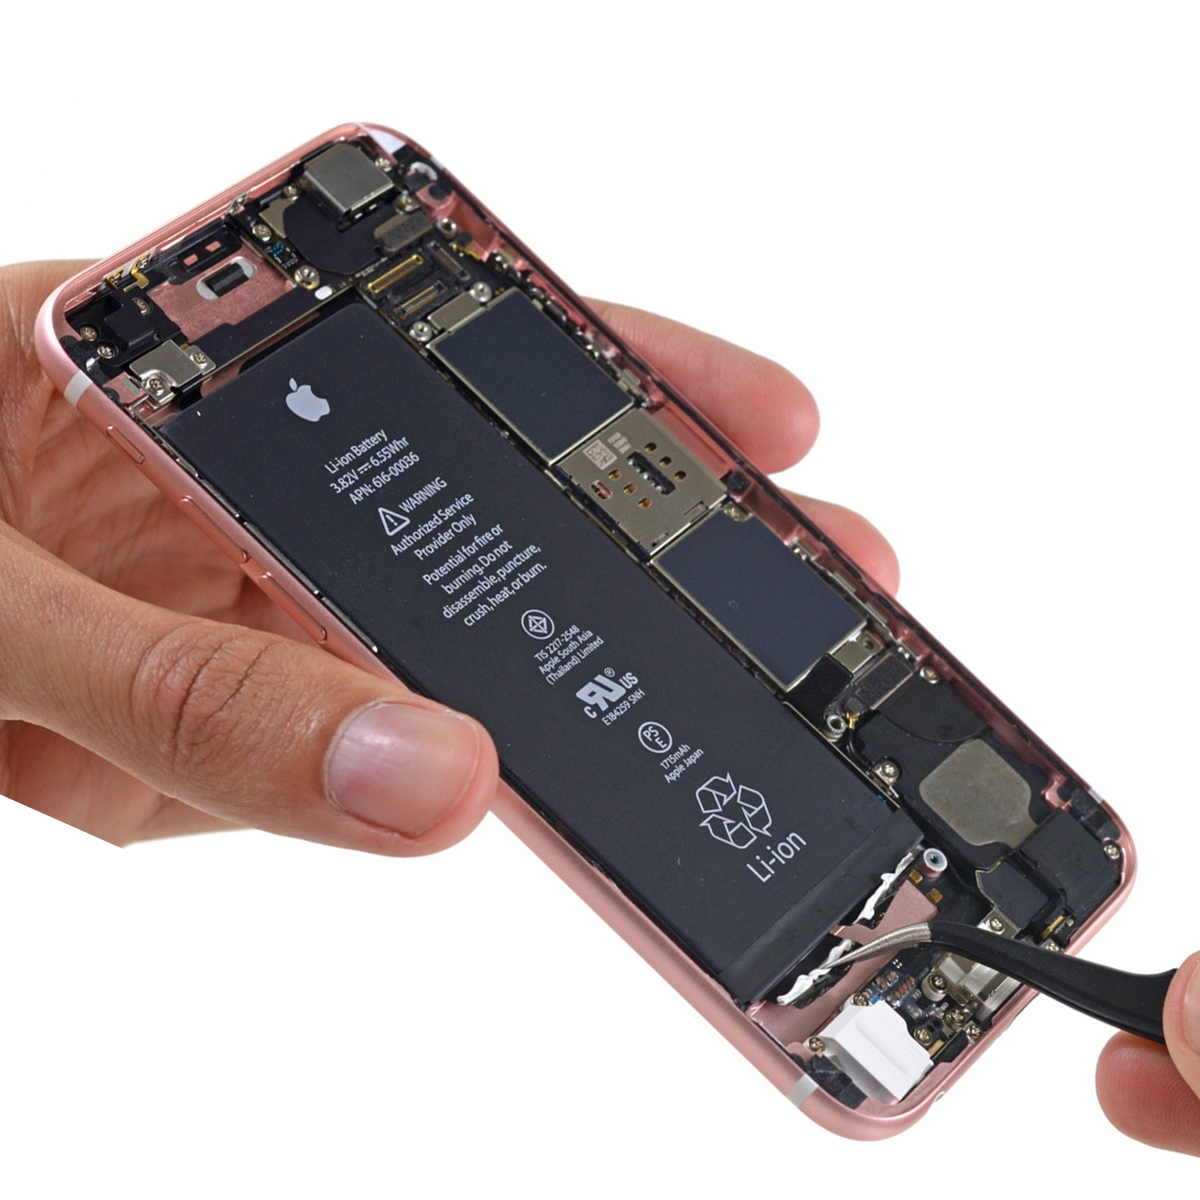 Batería Iphone 8 PLUS Original instalado - Servicio Tecnico Especializado  Macbook iPhone iPad